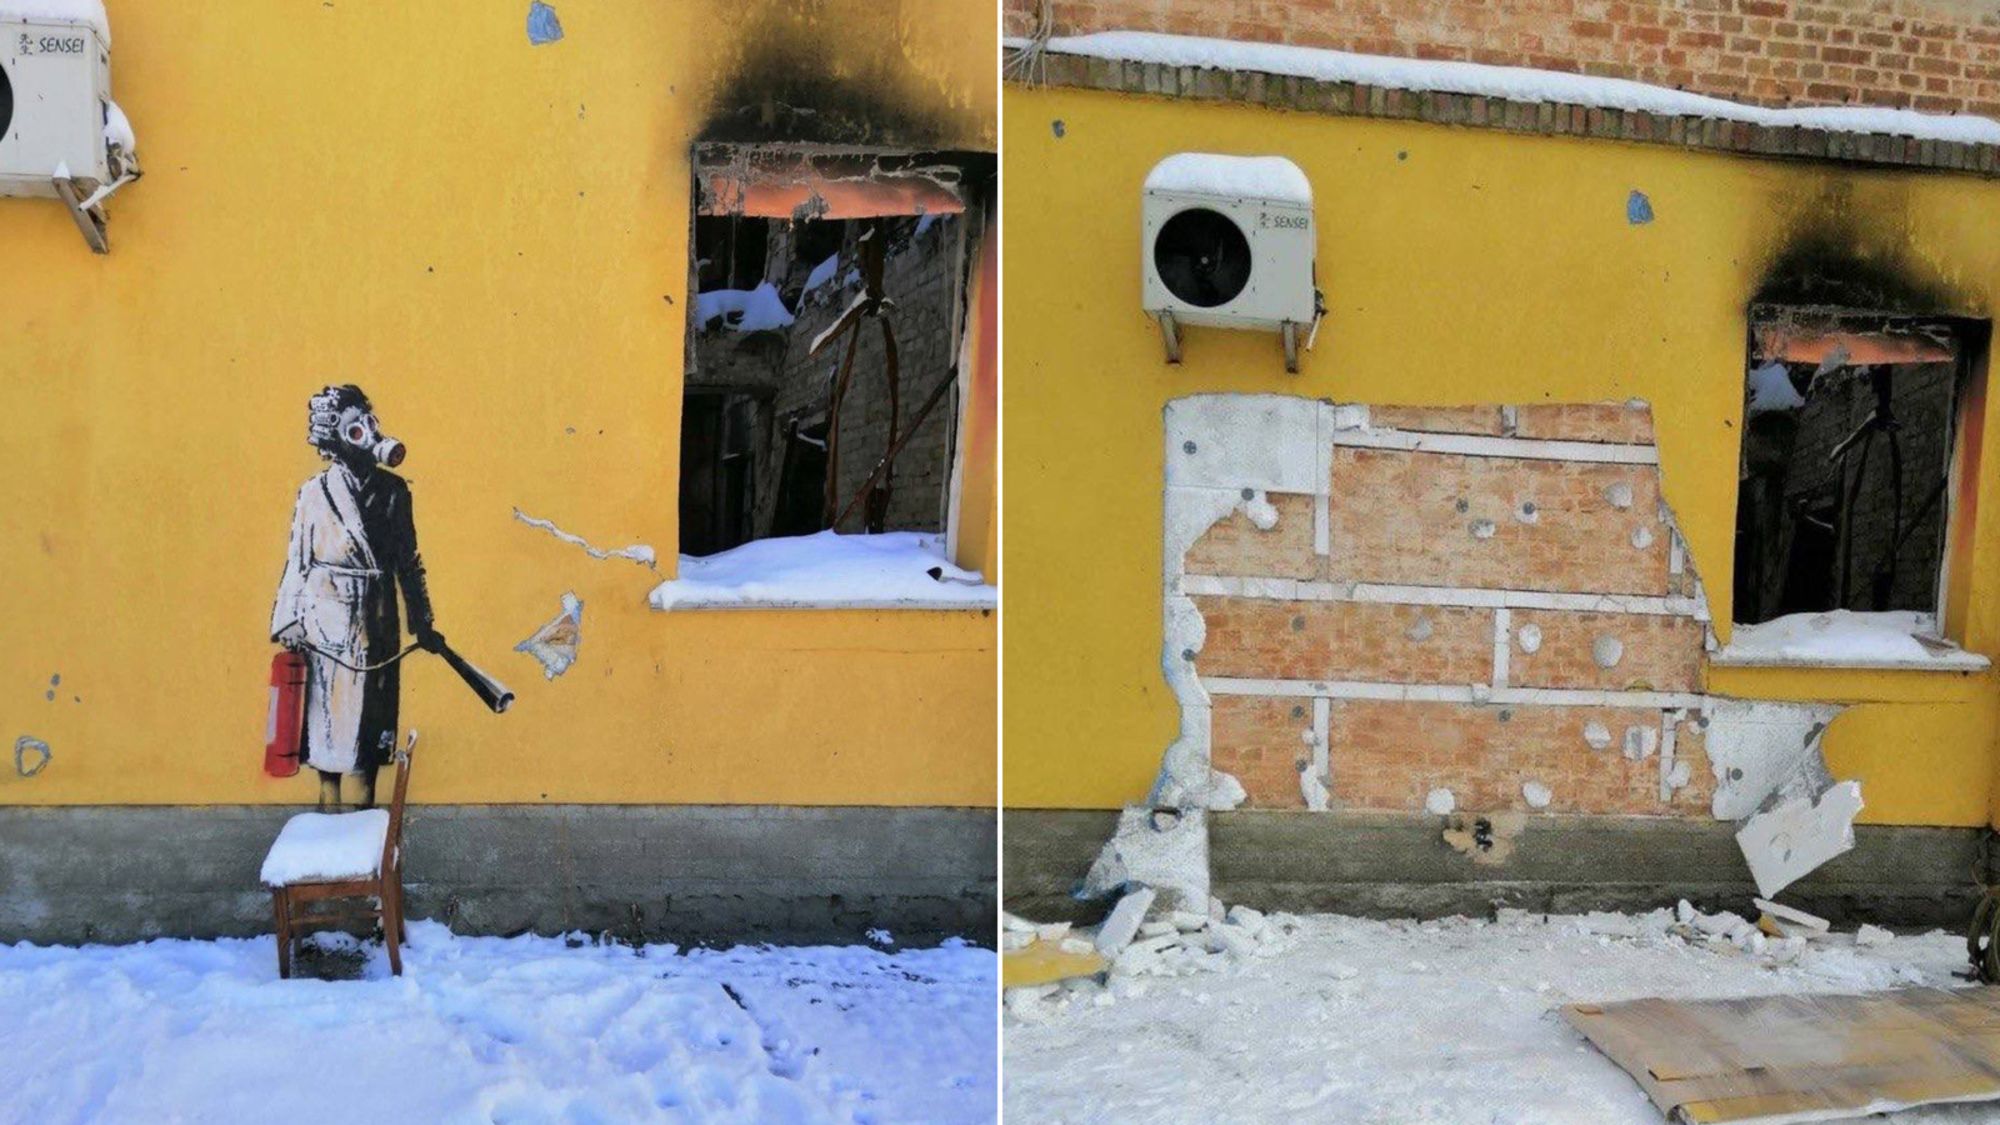 01 banksy mural stolen ukraine